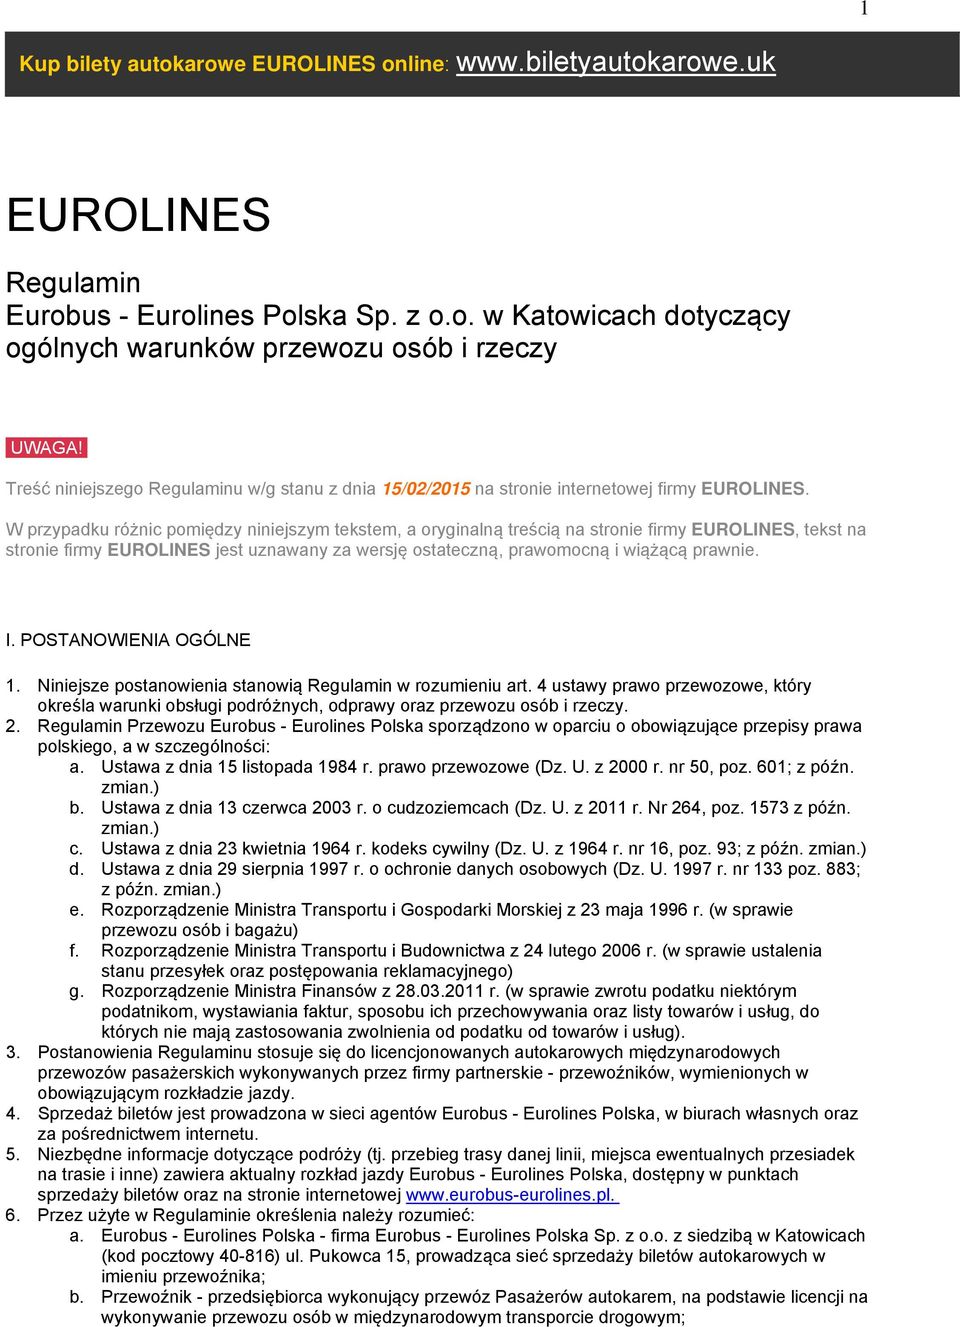 W przypadku różnic pomiędzy niniejszym tekstem, a oryginalną treścią na stronie firmy EUROLINES, tekst na stronie firmy EUROLINES jest uznawany za wersję ostateczną, prawomocną i wiążącą prawnie. I.